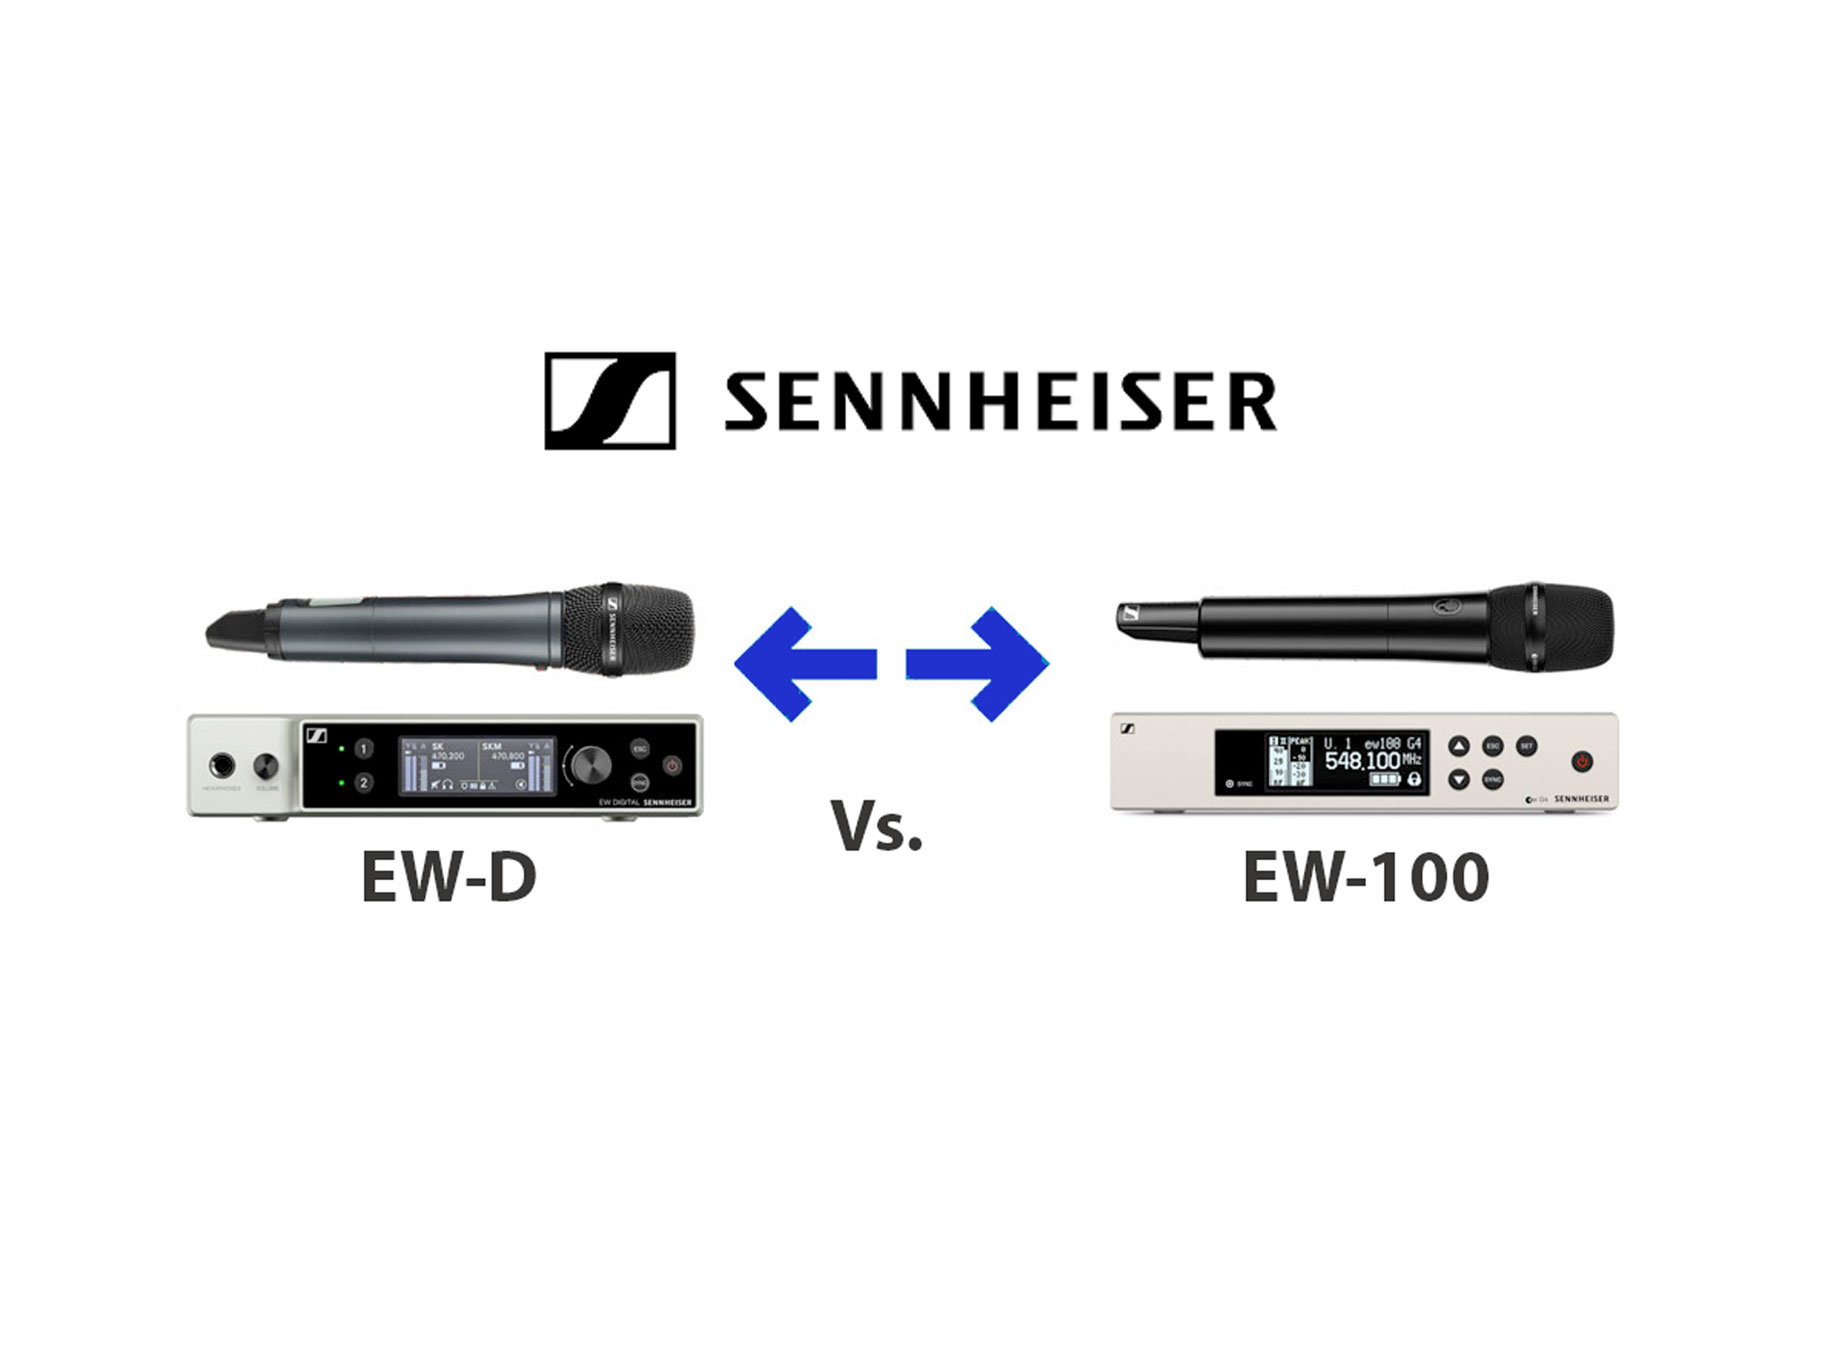 Sennheiser EW-D Vs Sennheiser EW-100